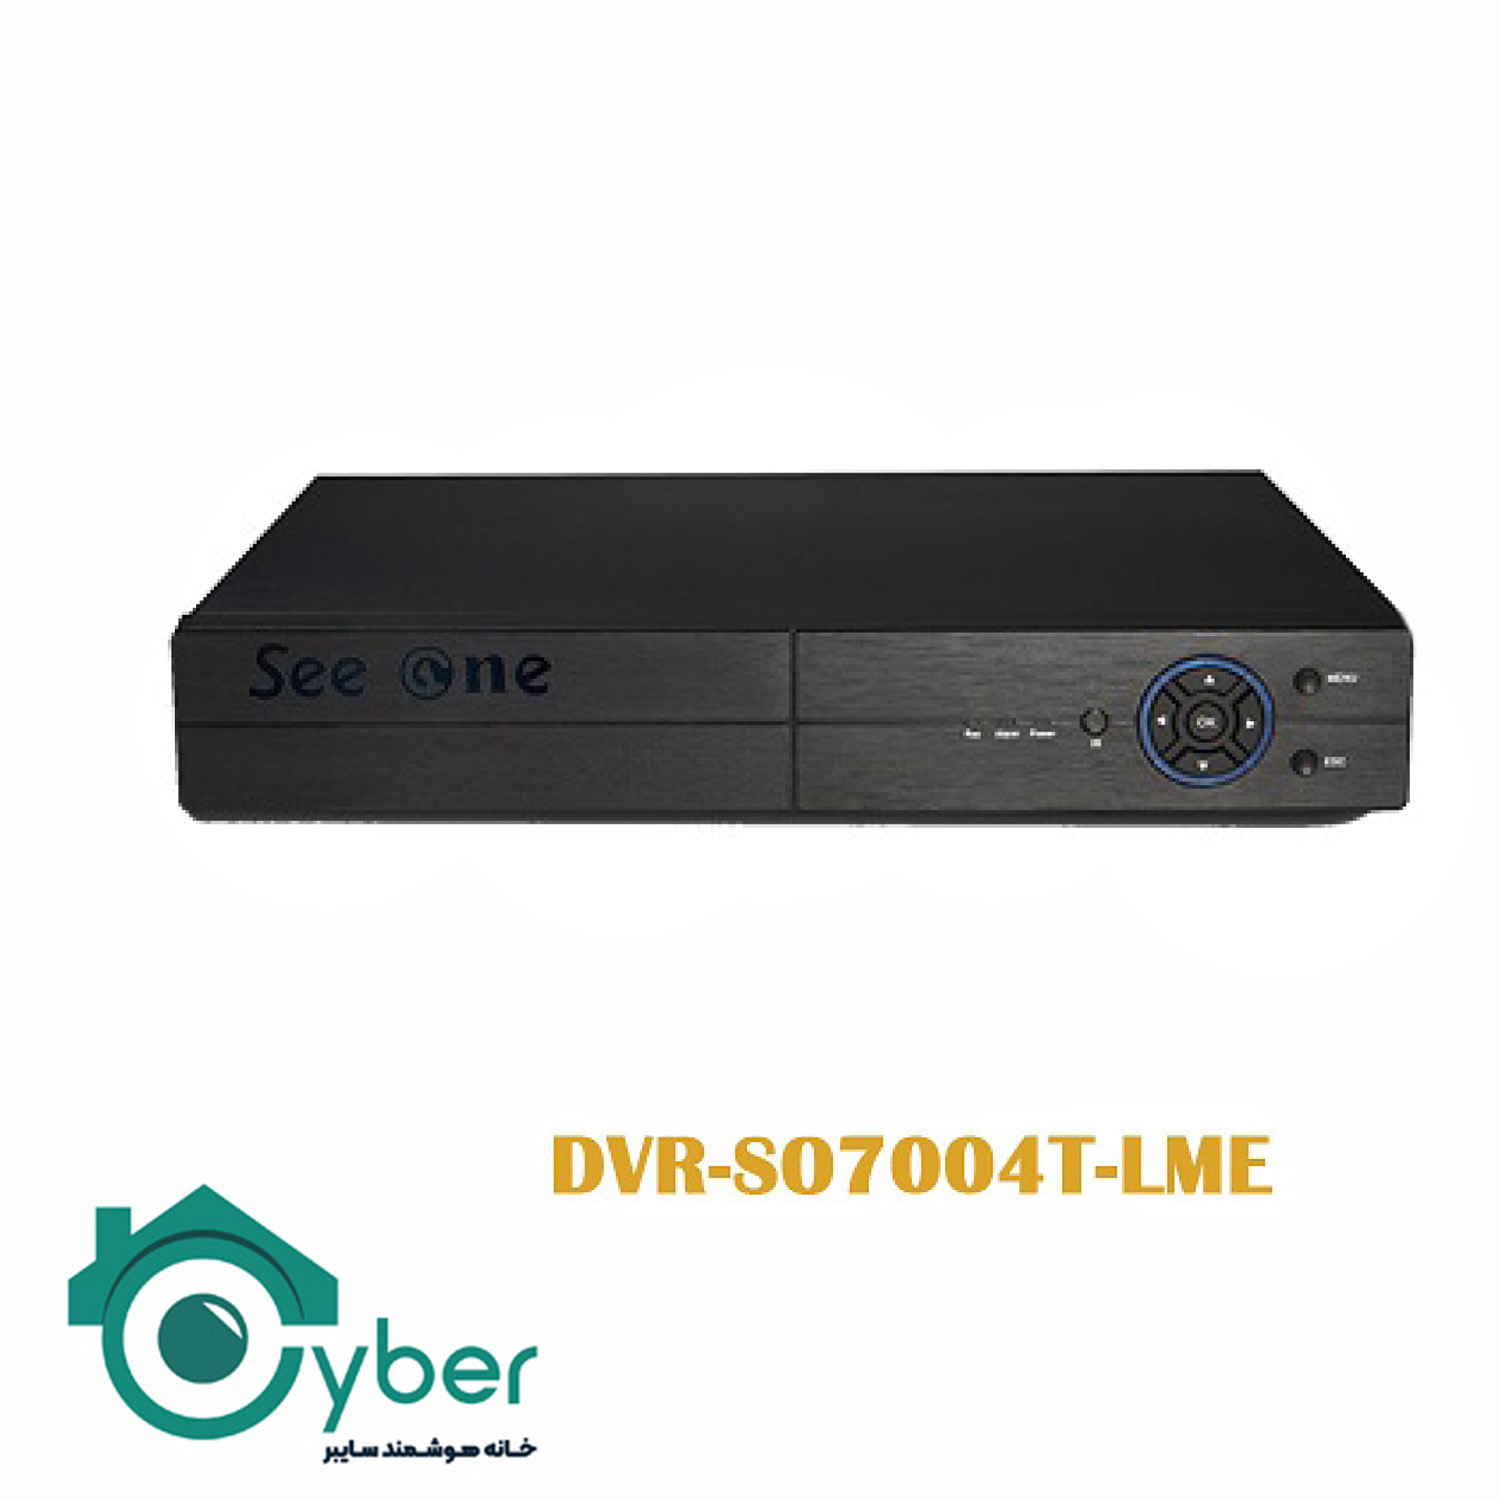 دستگاه ضبط تصاویر 4 کانال DVR-S07004T-LME مدل Seeone سیوان